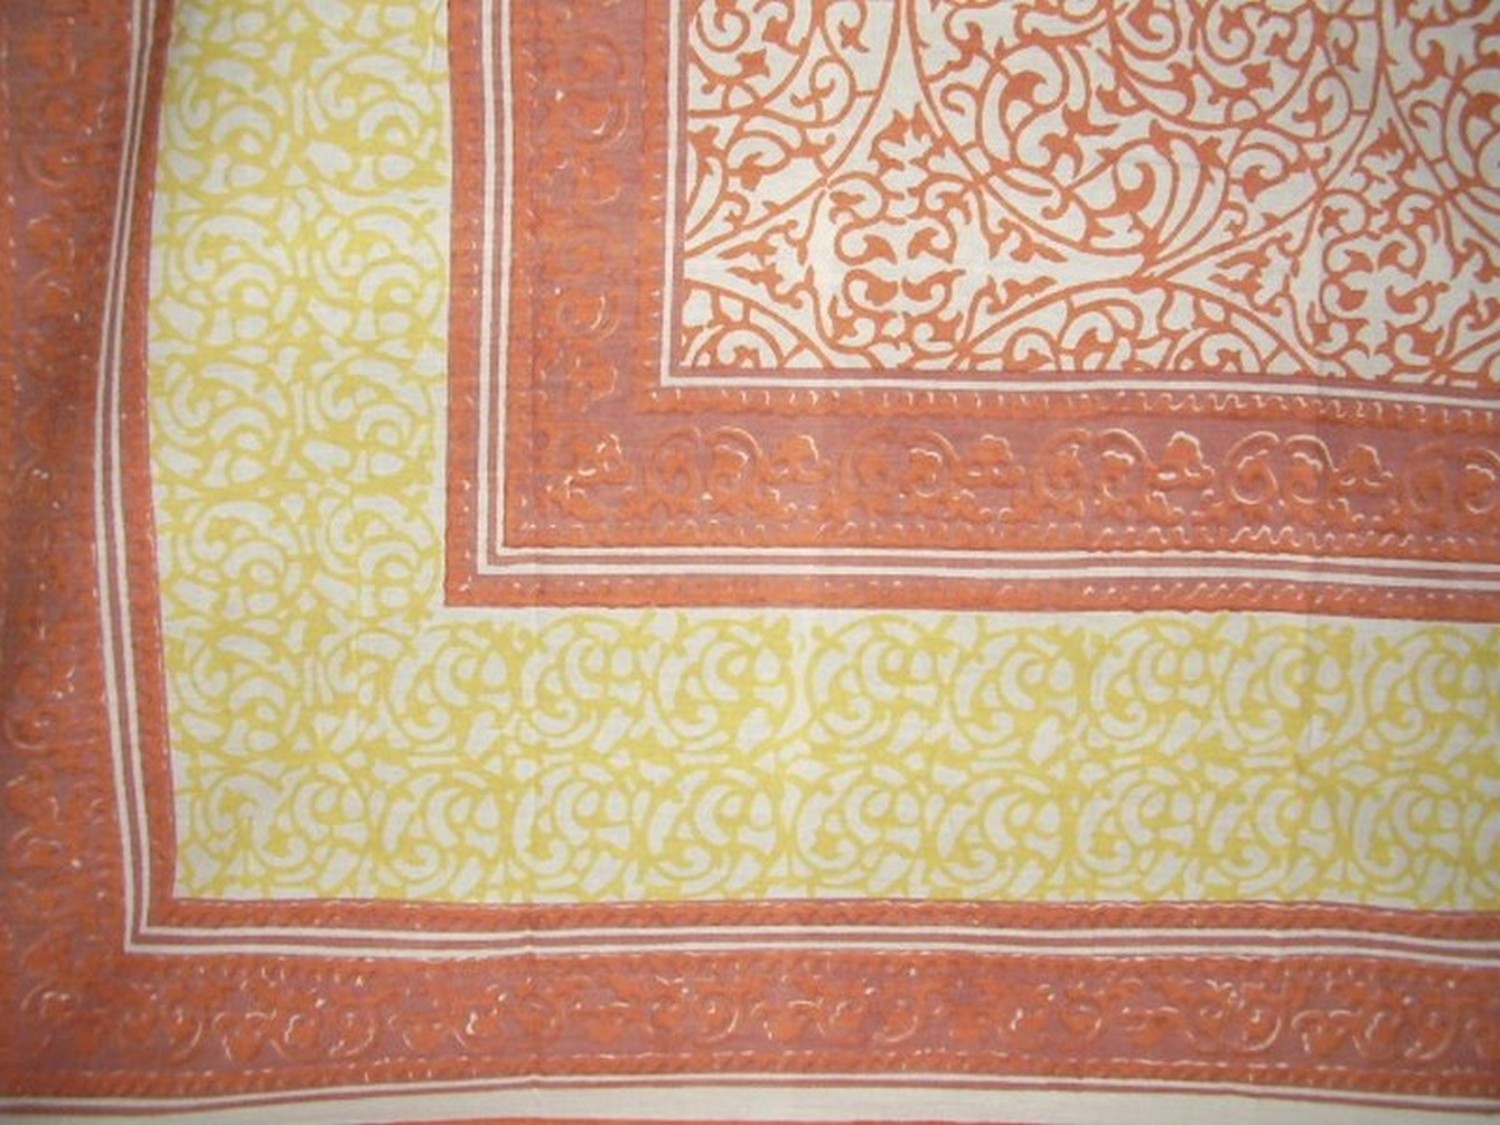 Perzisch filigraan blokprint tapijt katoenen sprei 108 "x 88" Full-Queen